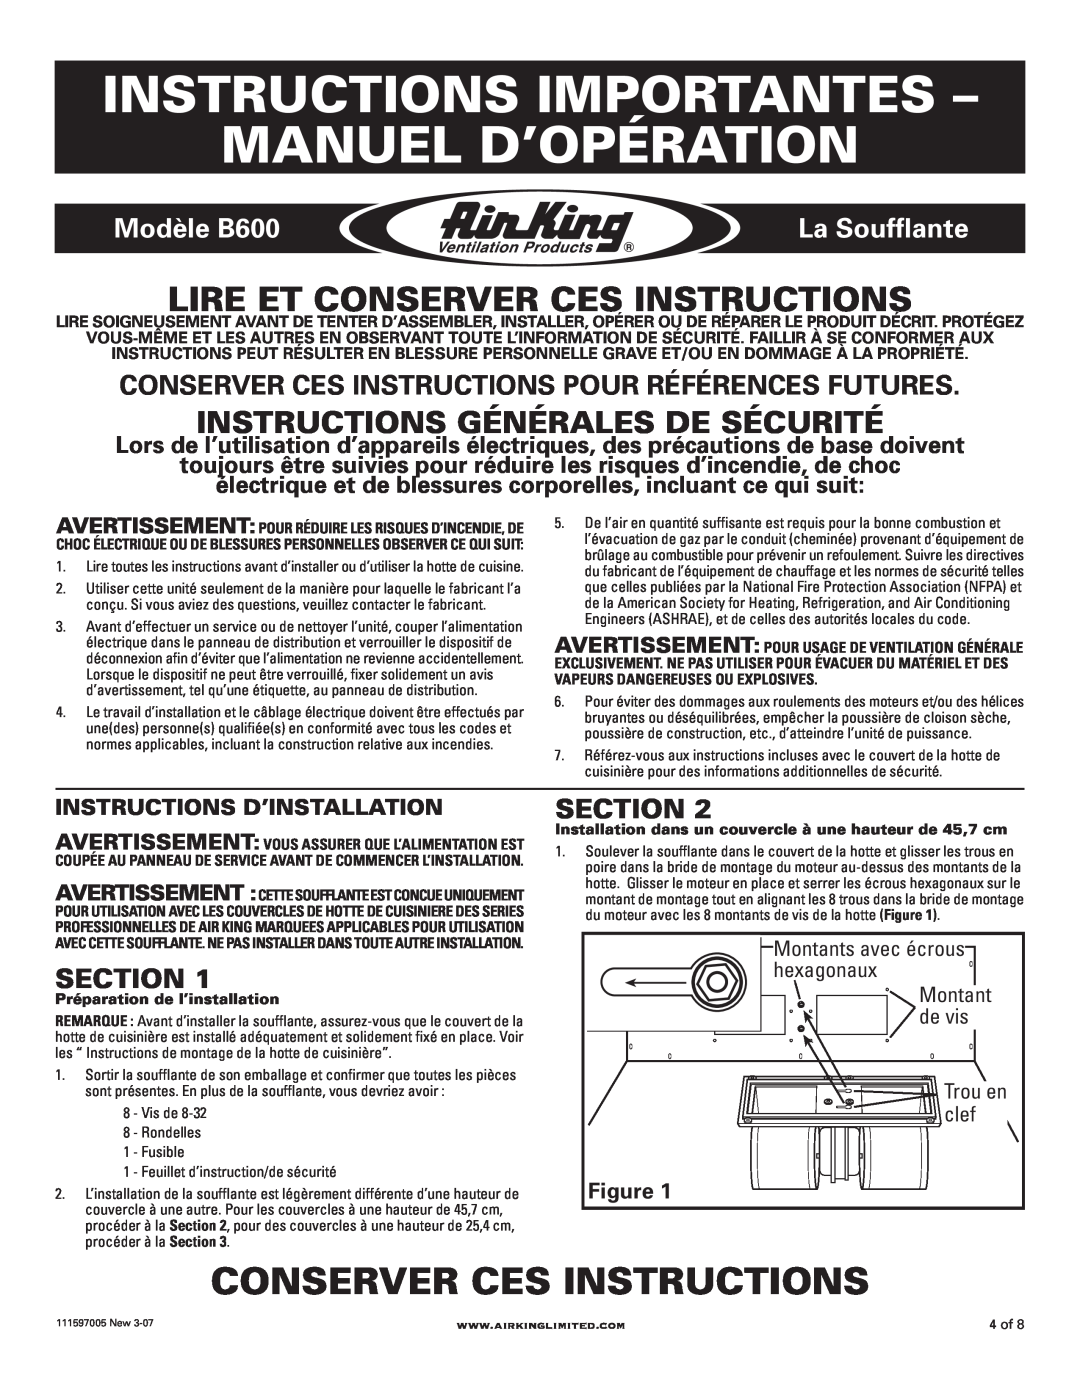 Air King Instructions Importantes - Manuel D’Opération, Conserver Ces Instructions, Modèle B600, La Soufflante, Section 